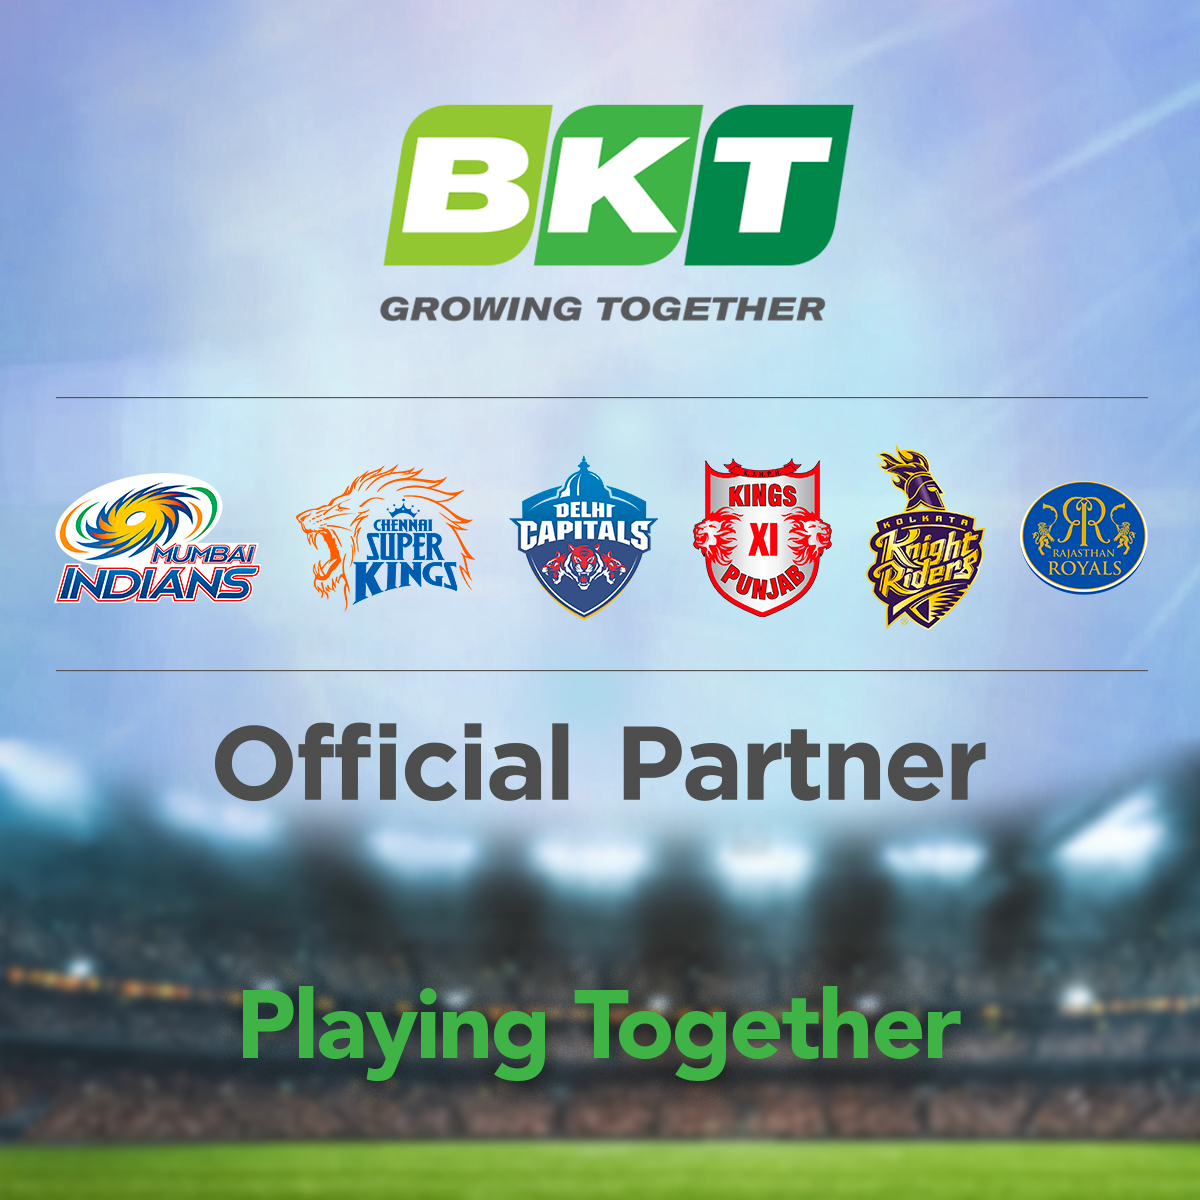 BKT sponsors 6 IPL cricket franchises